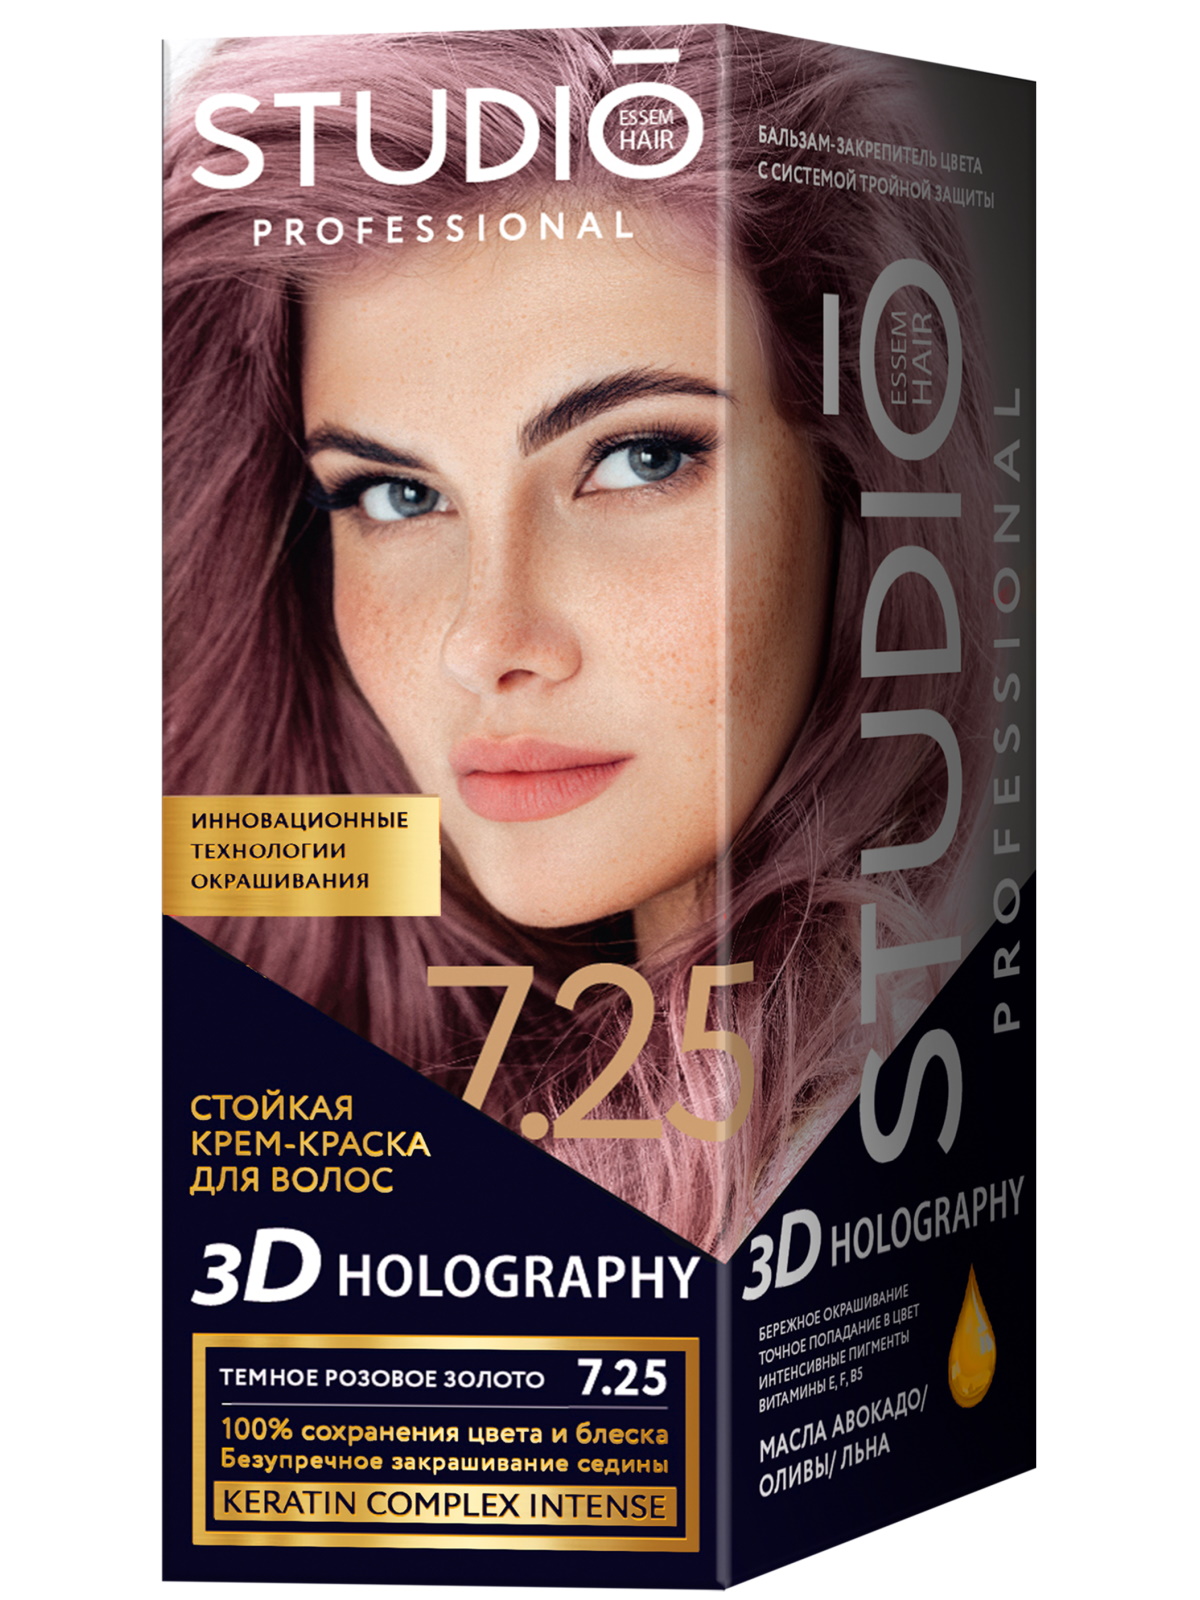 Комплект 3D HOLOGRAPHY STUDIO PROFESSIONAL 7.25 темное розовое золото 2*50+15 мл комплект 3d holography studio professional 90 105 пепельный блондин 2 50 15 мл